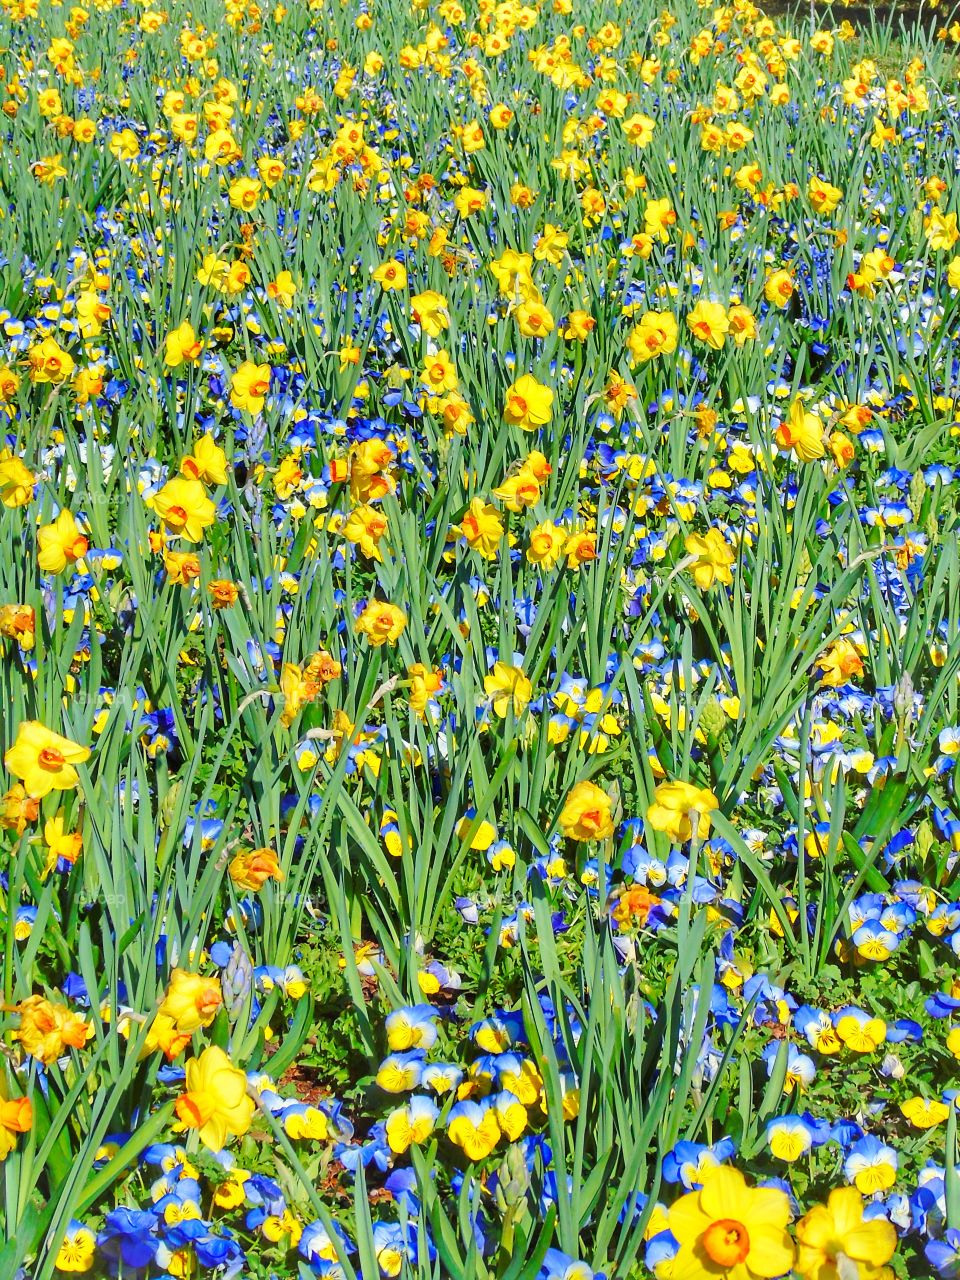 Yellow daffodils growing in field